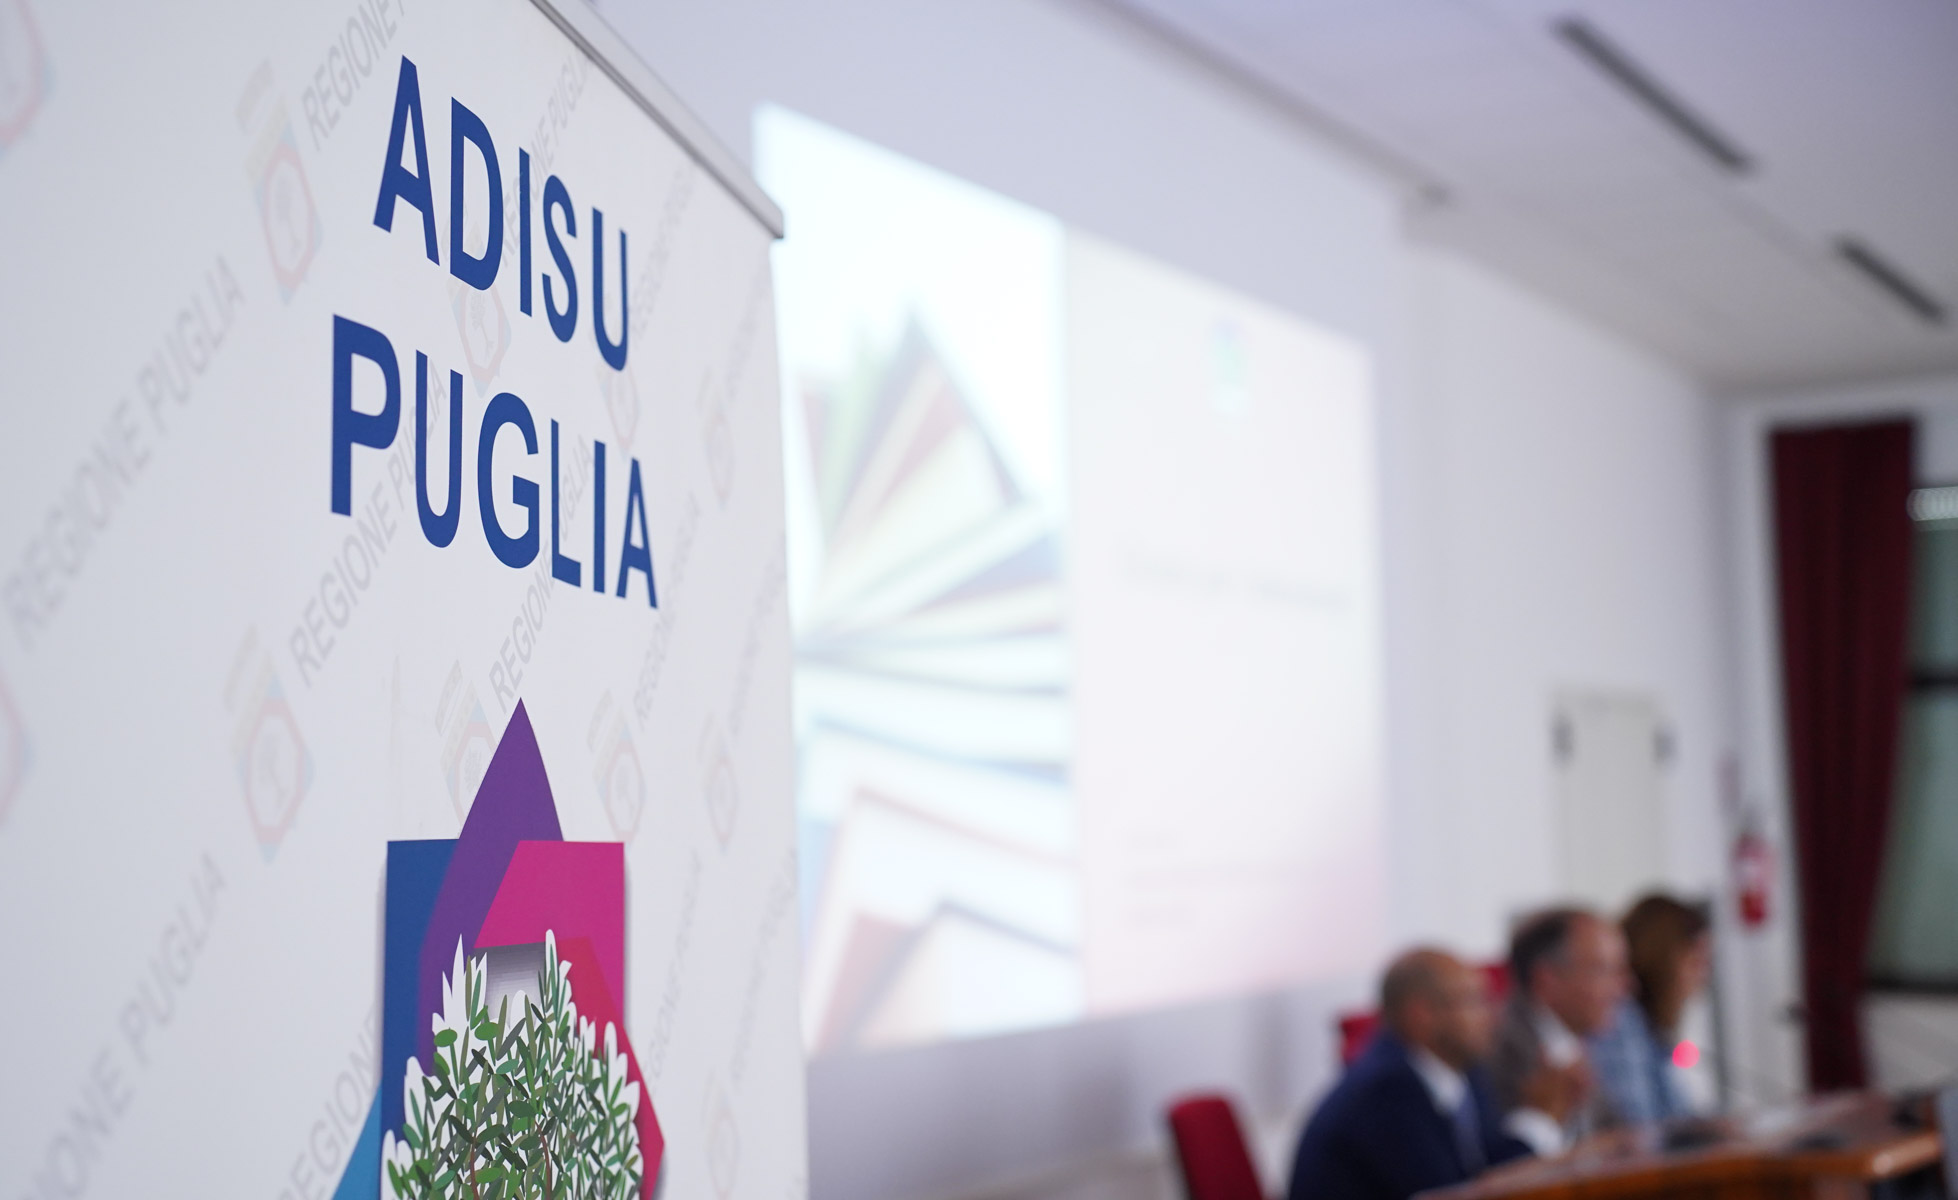 Galleria L’assessore Leo “Il presente e il futuro del diritto allo studio per una Puglia Regione Universitaria” - Diapositiva 12 di 13